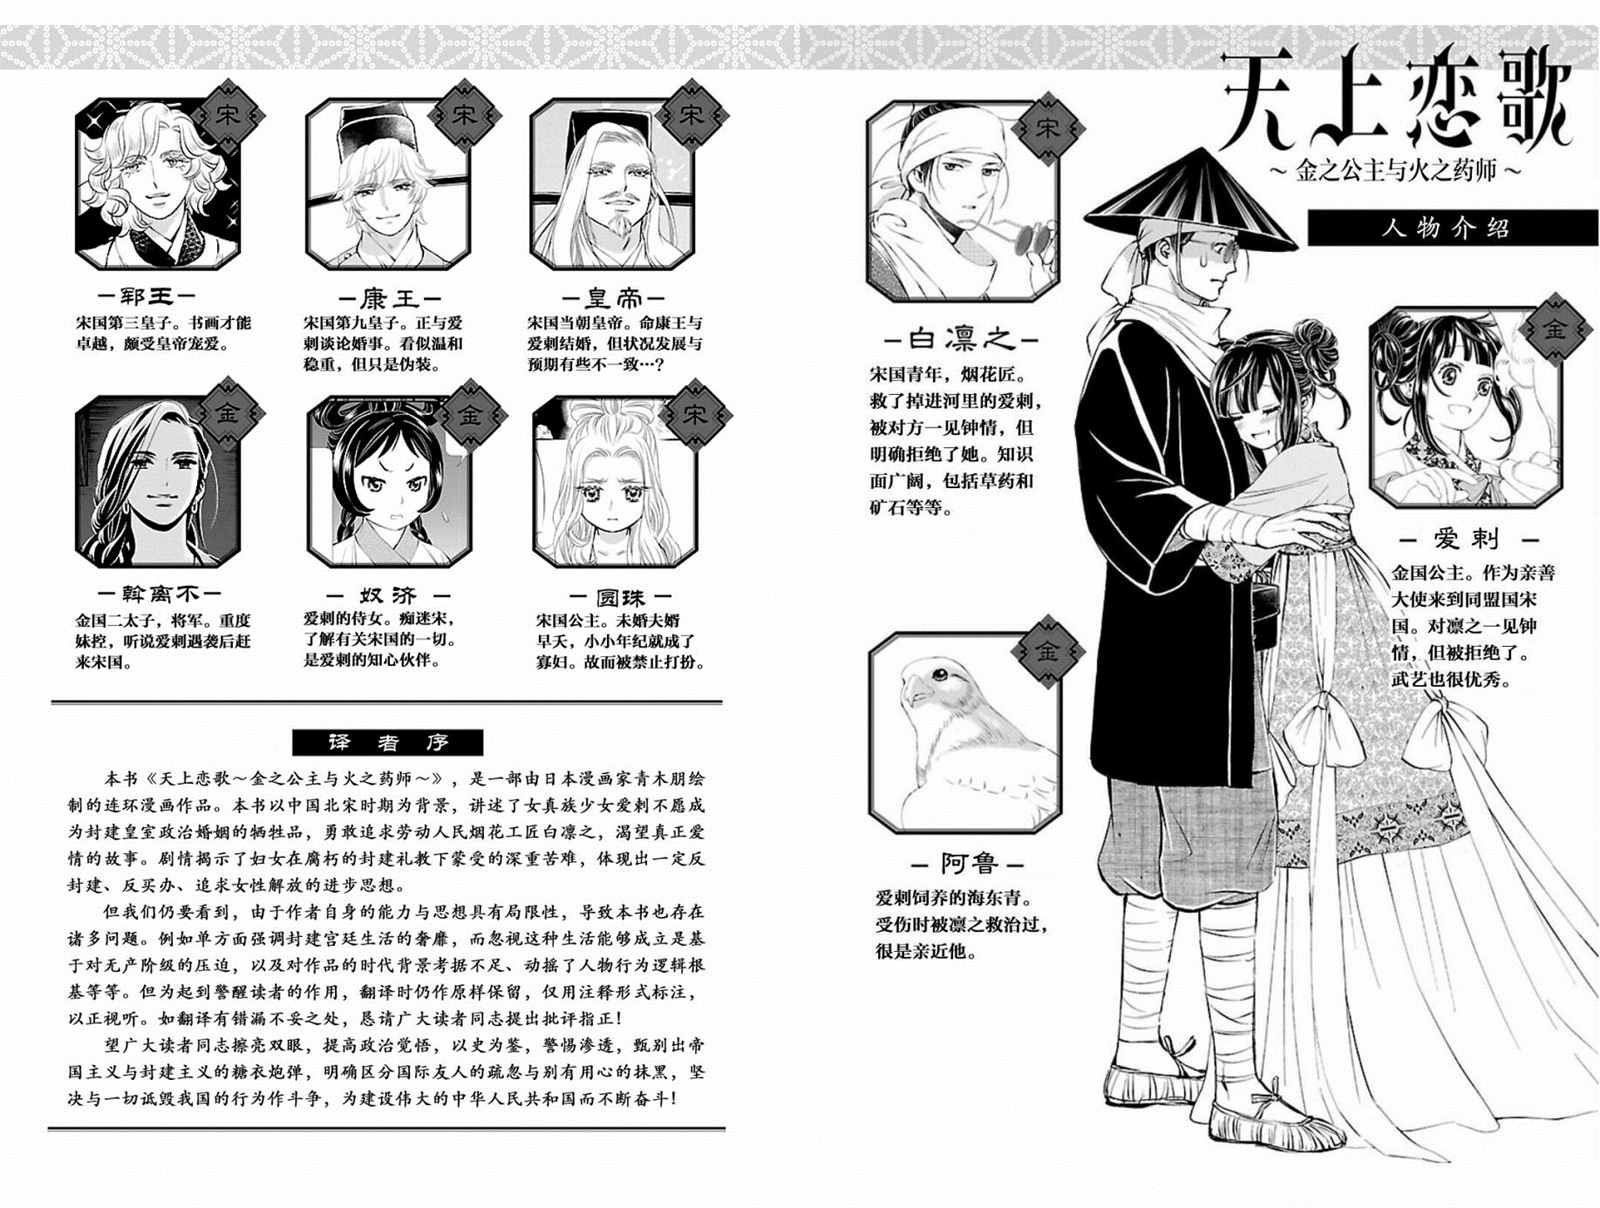 天上恋歌~金之公主与火之药师~漫画,第13话3图